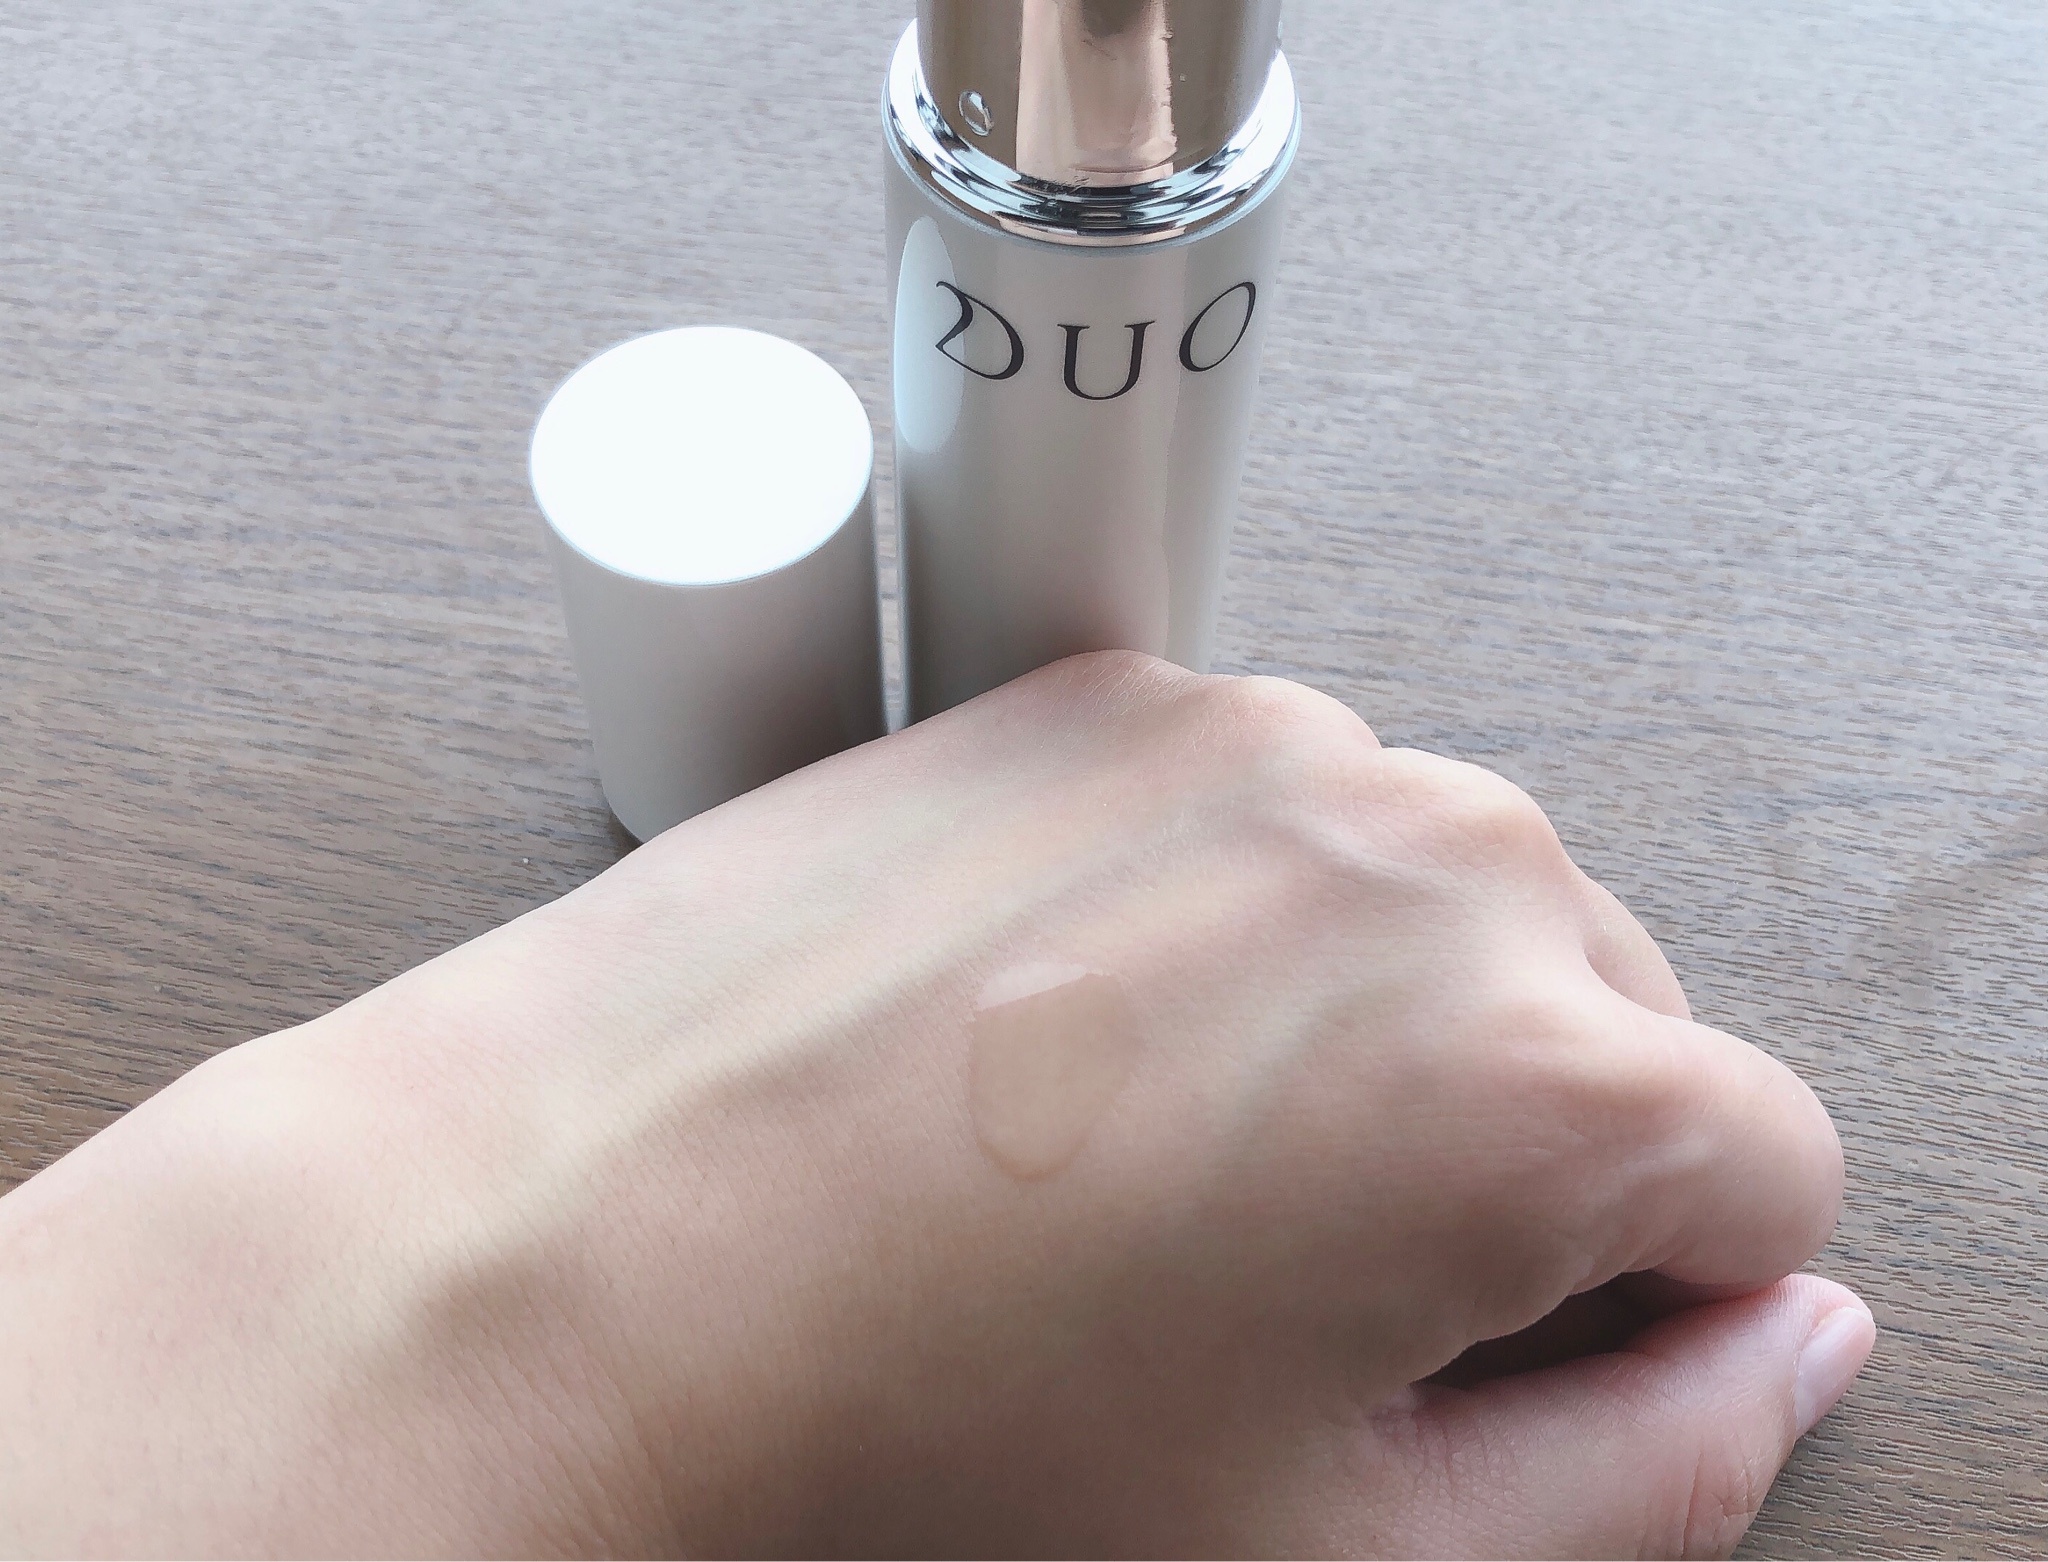 DUO(デュオ) / ザ エッセンス セラムの公式商品情報｜美容・化粧品情報